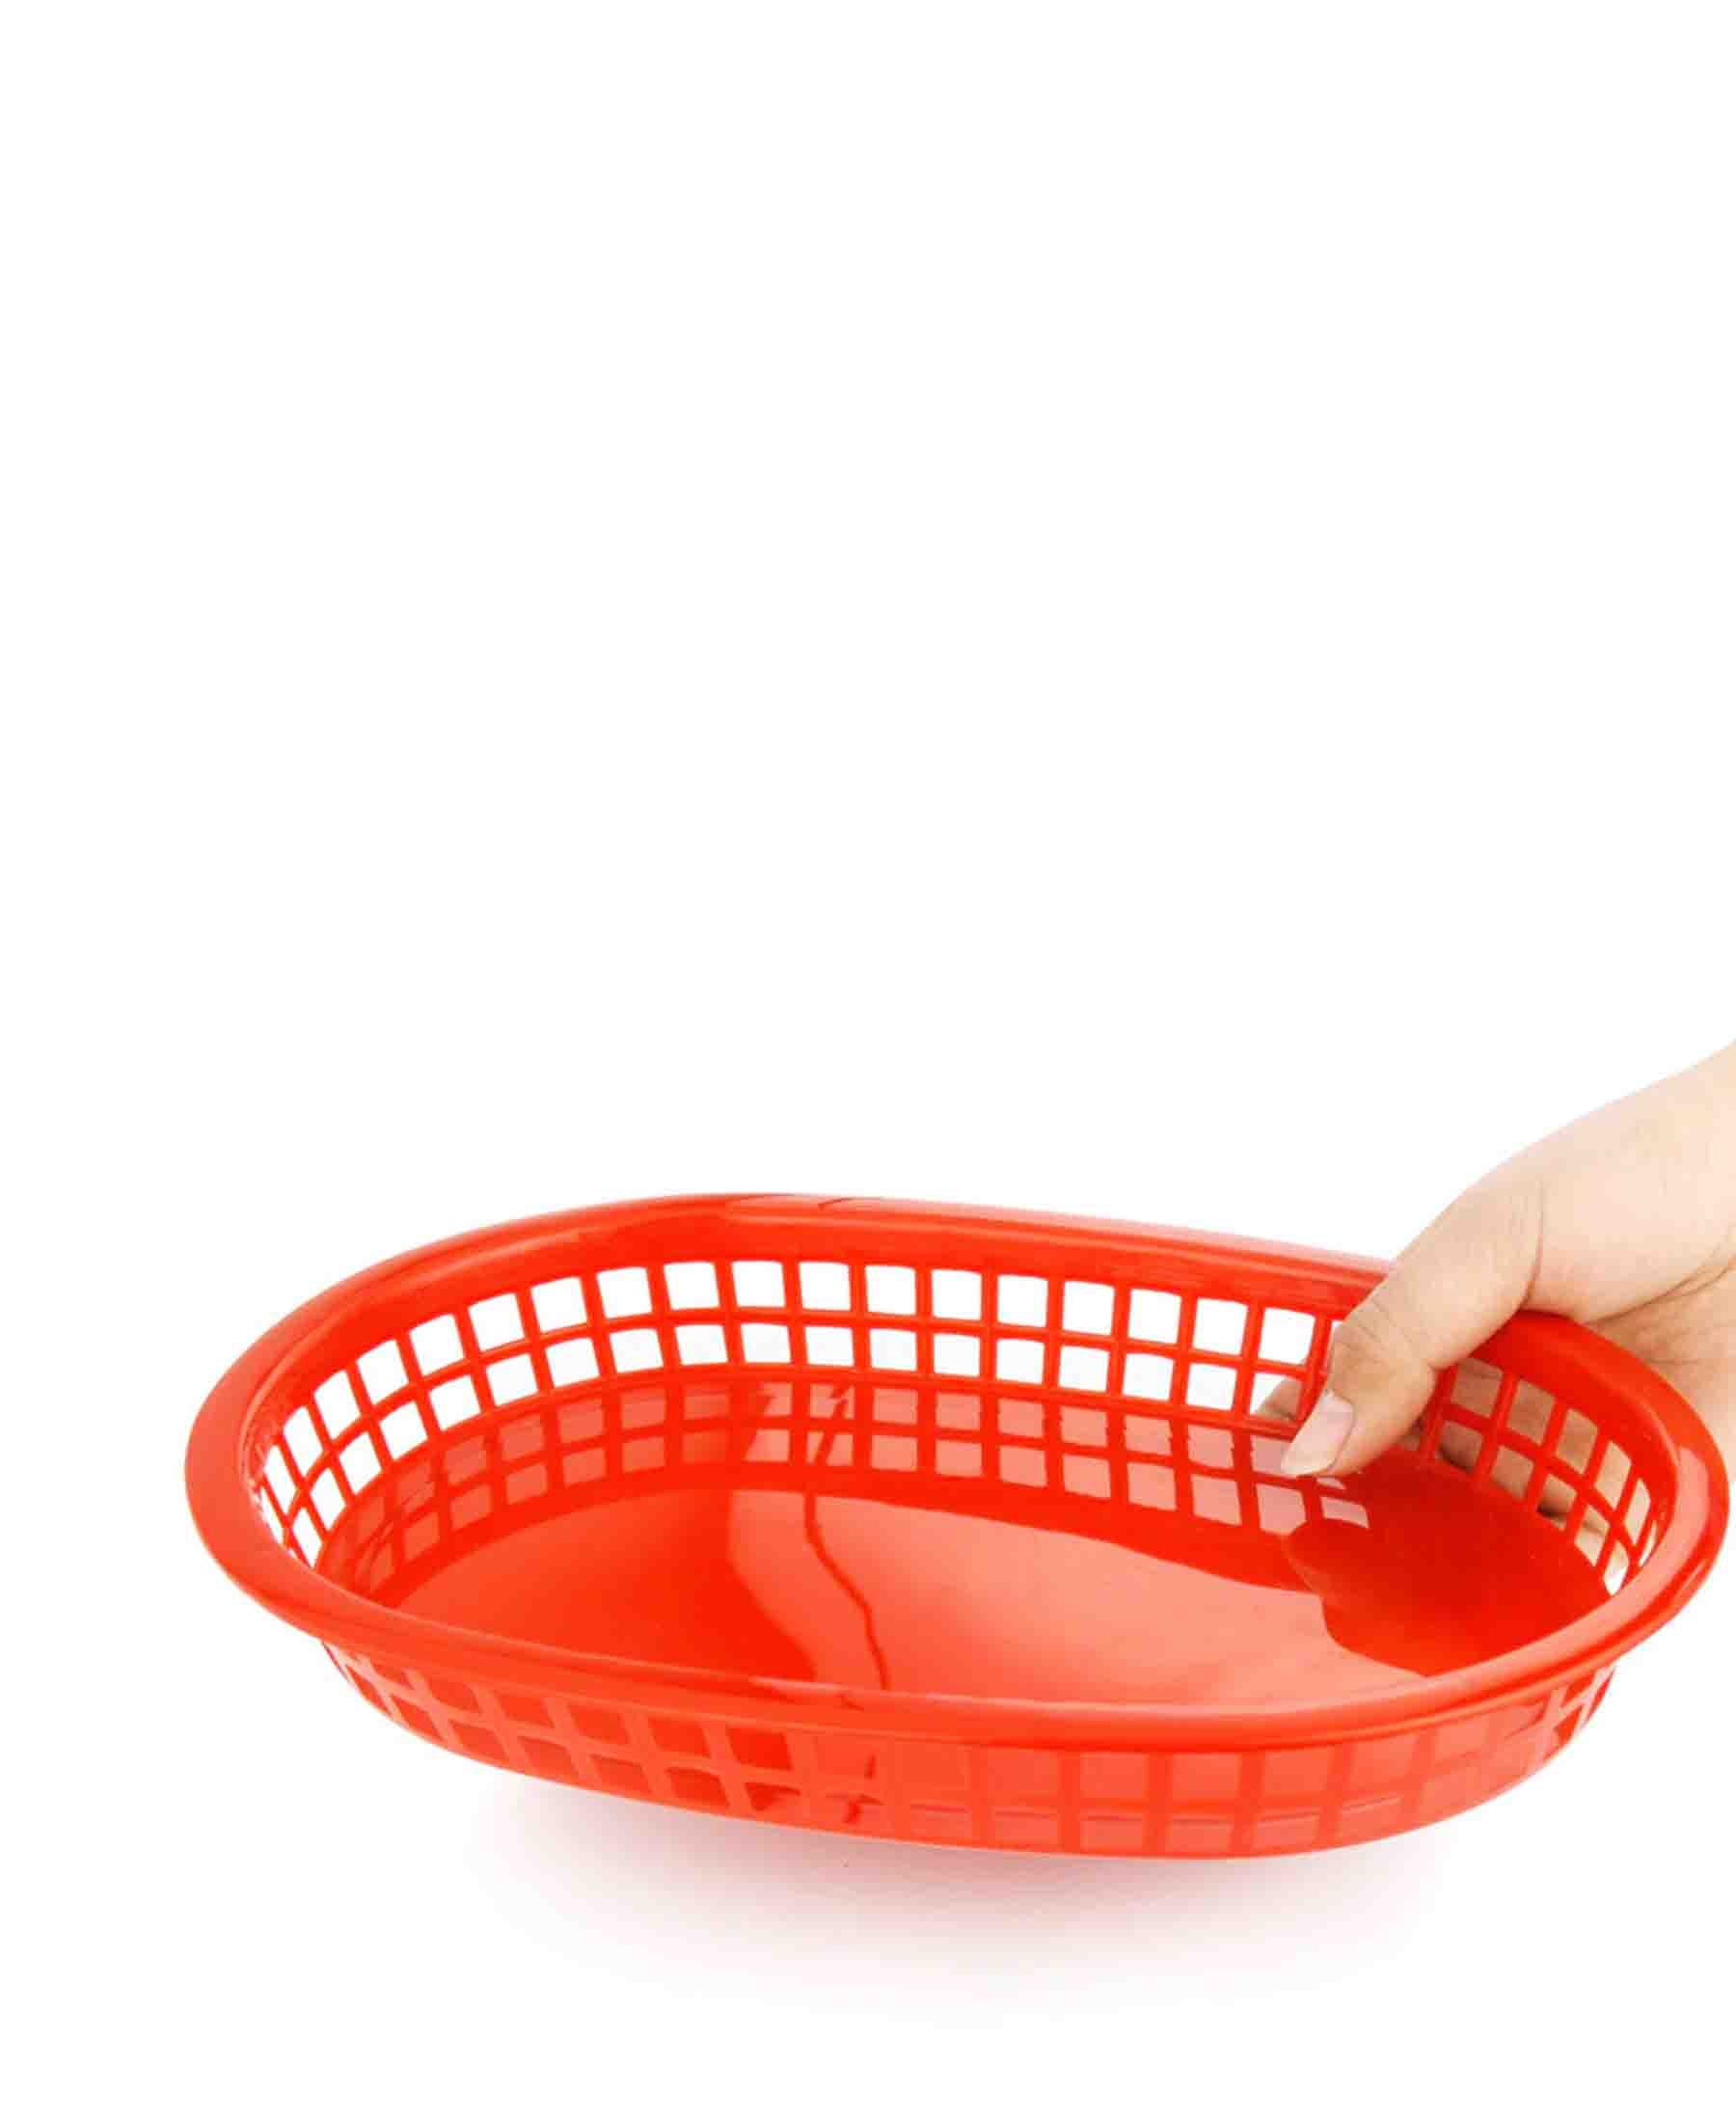 Regent 27cm Oval Plastic Serving Basket - Red